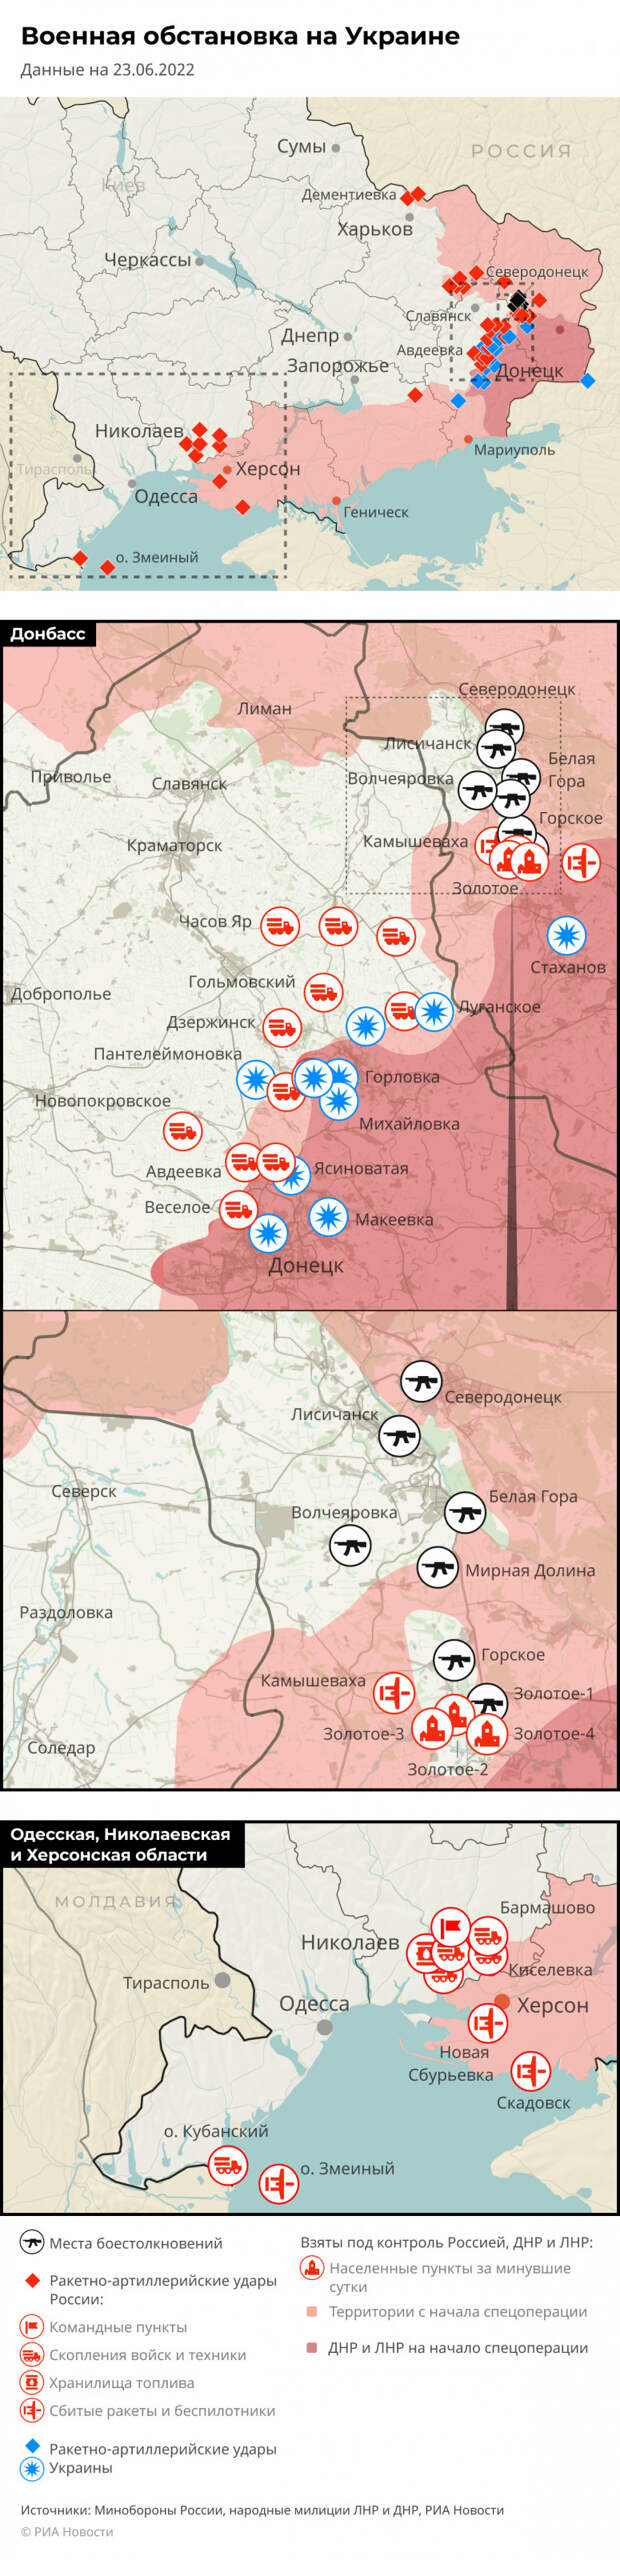 Карта спецоперации Вооруженных сил России на Украине на 23.06.2022